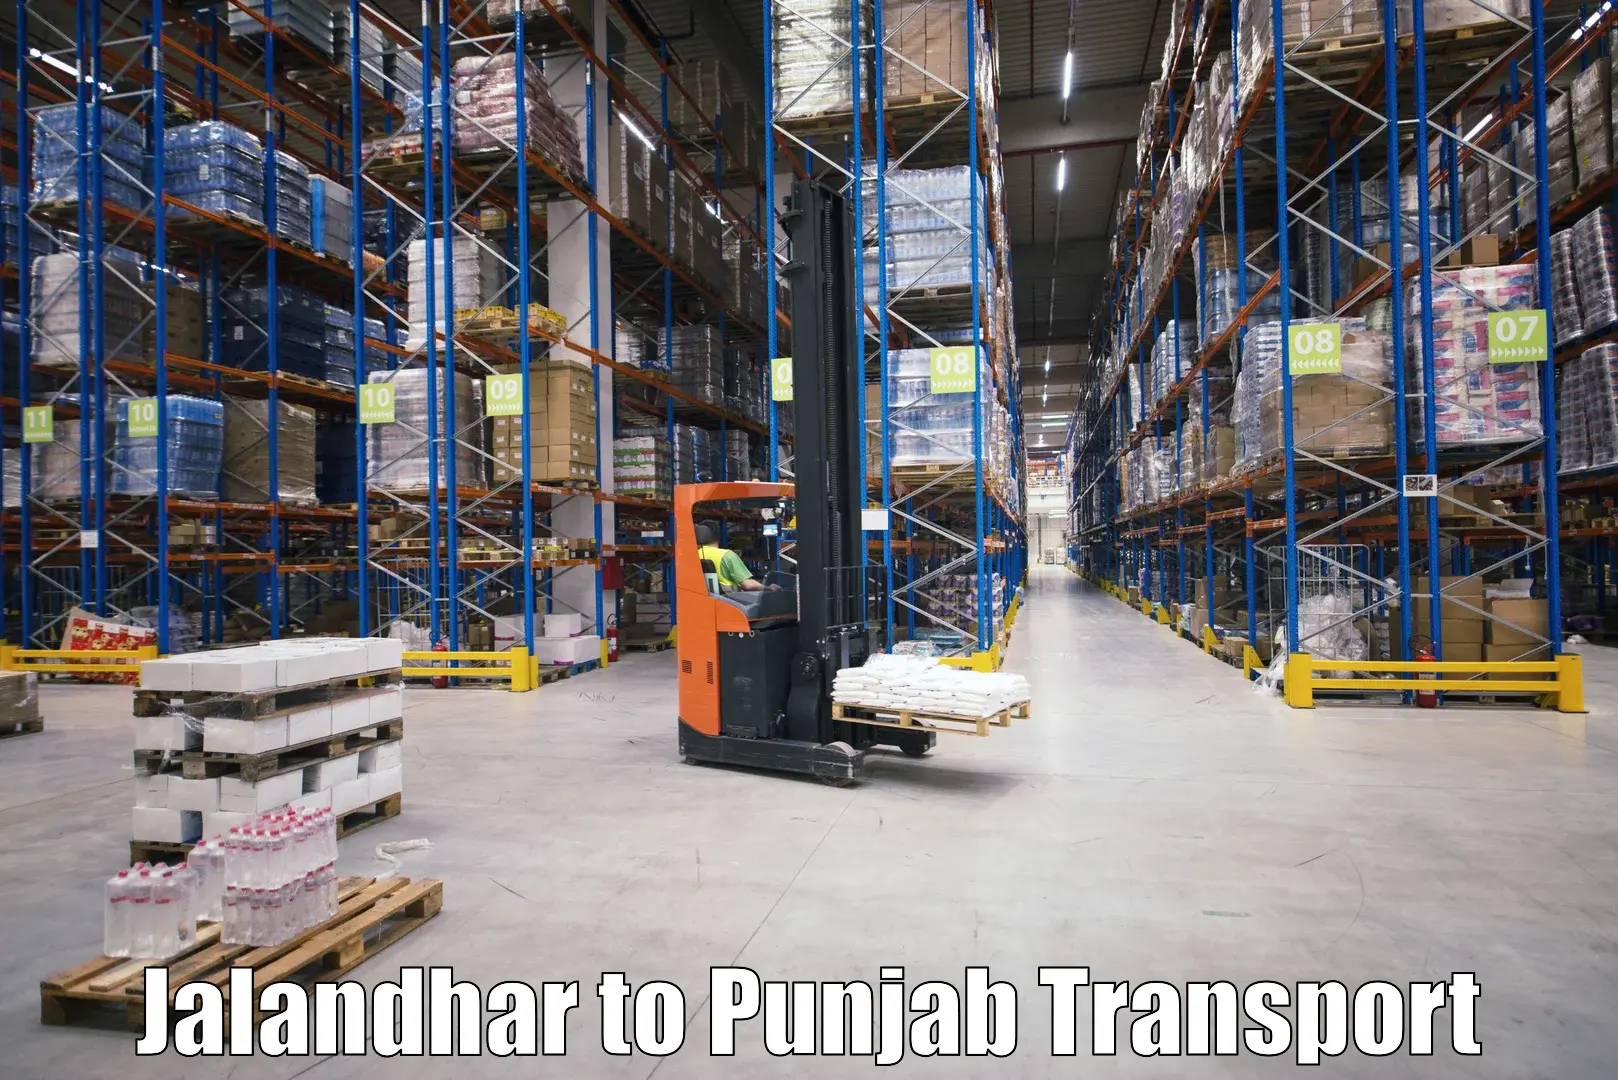 Delivery service Jalandhar to Jalandhar